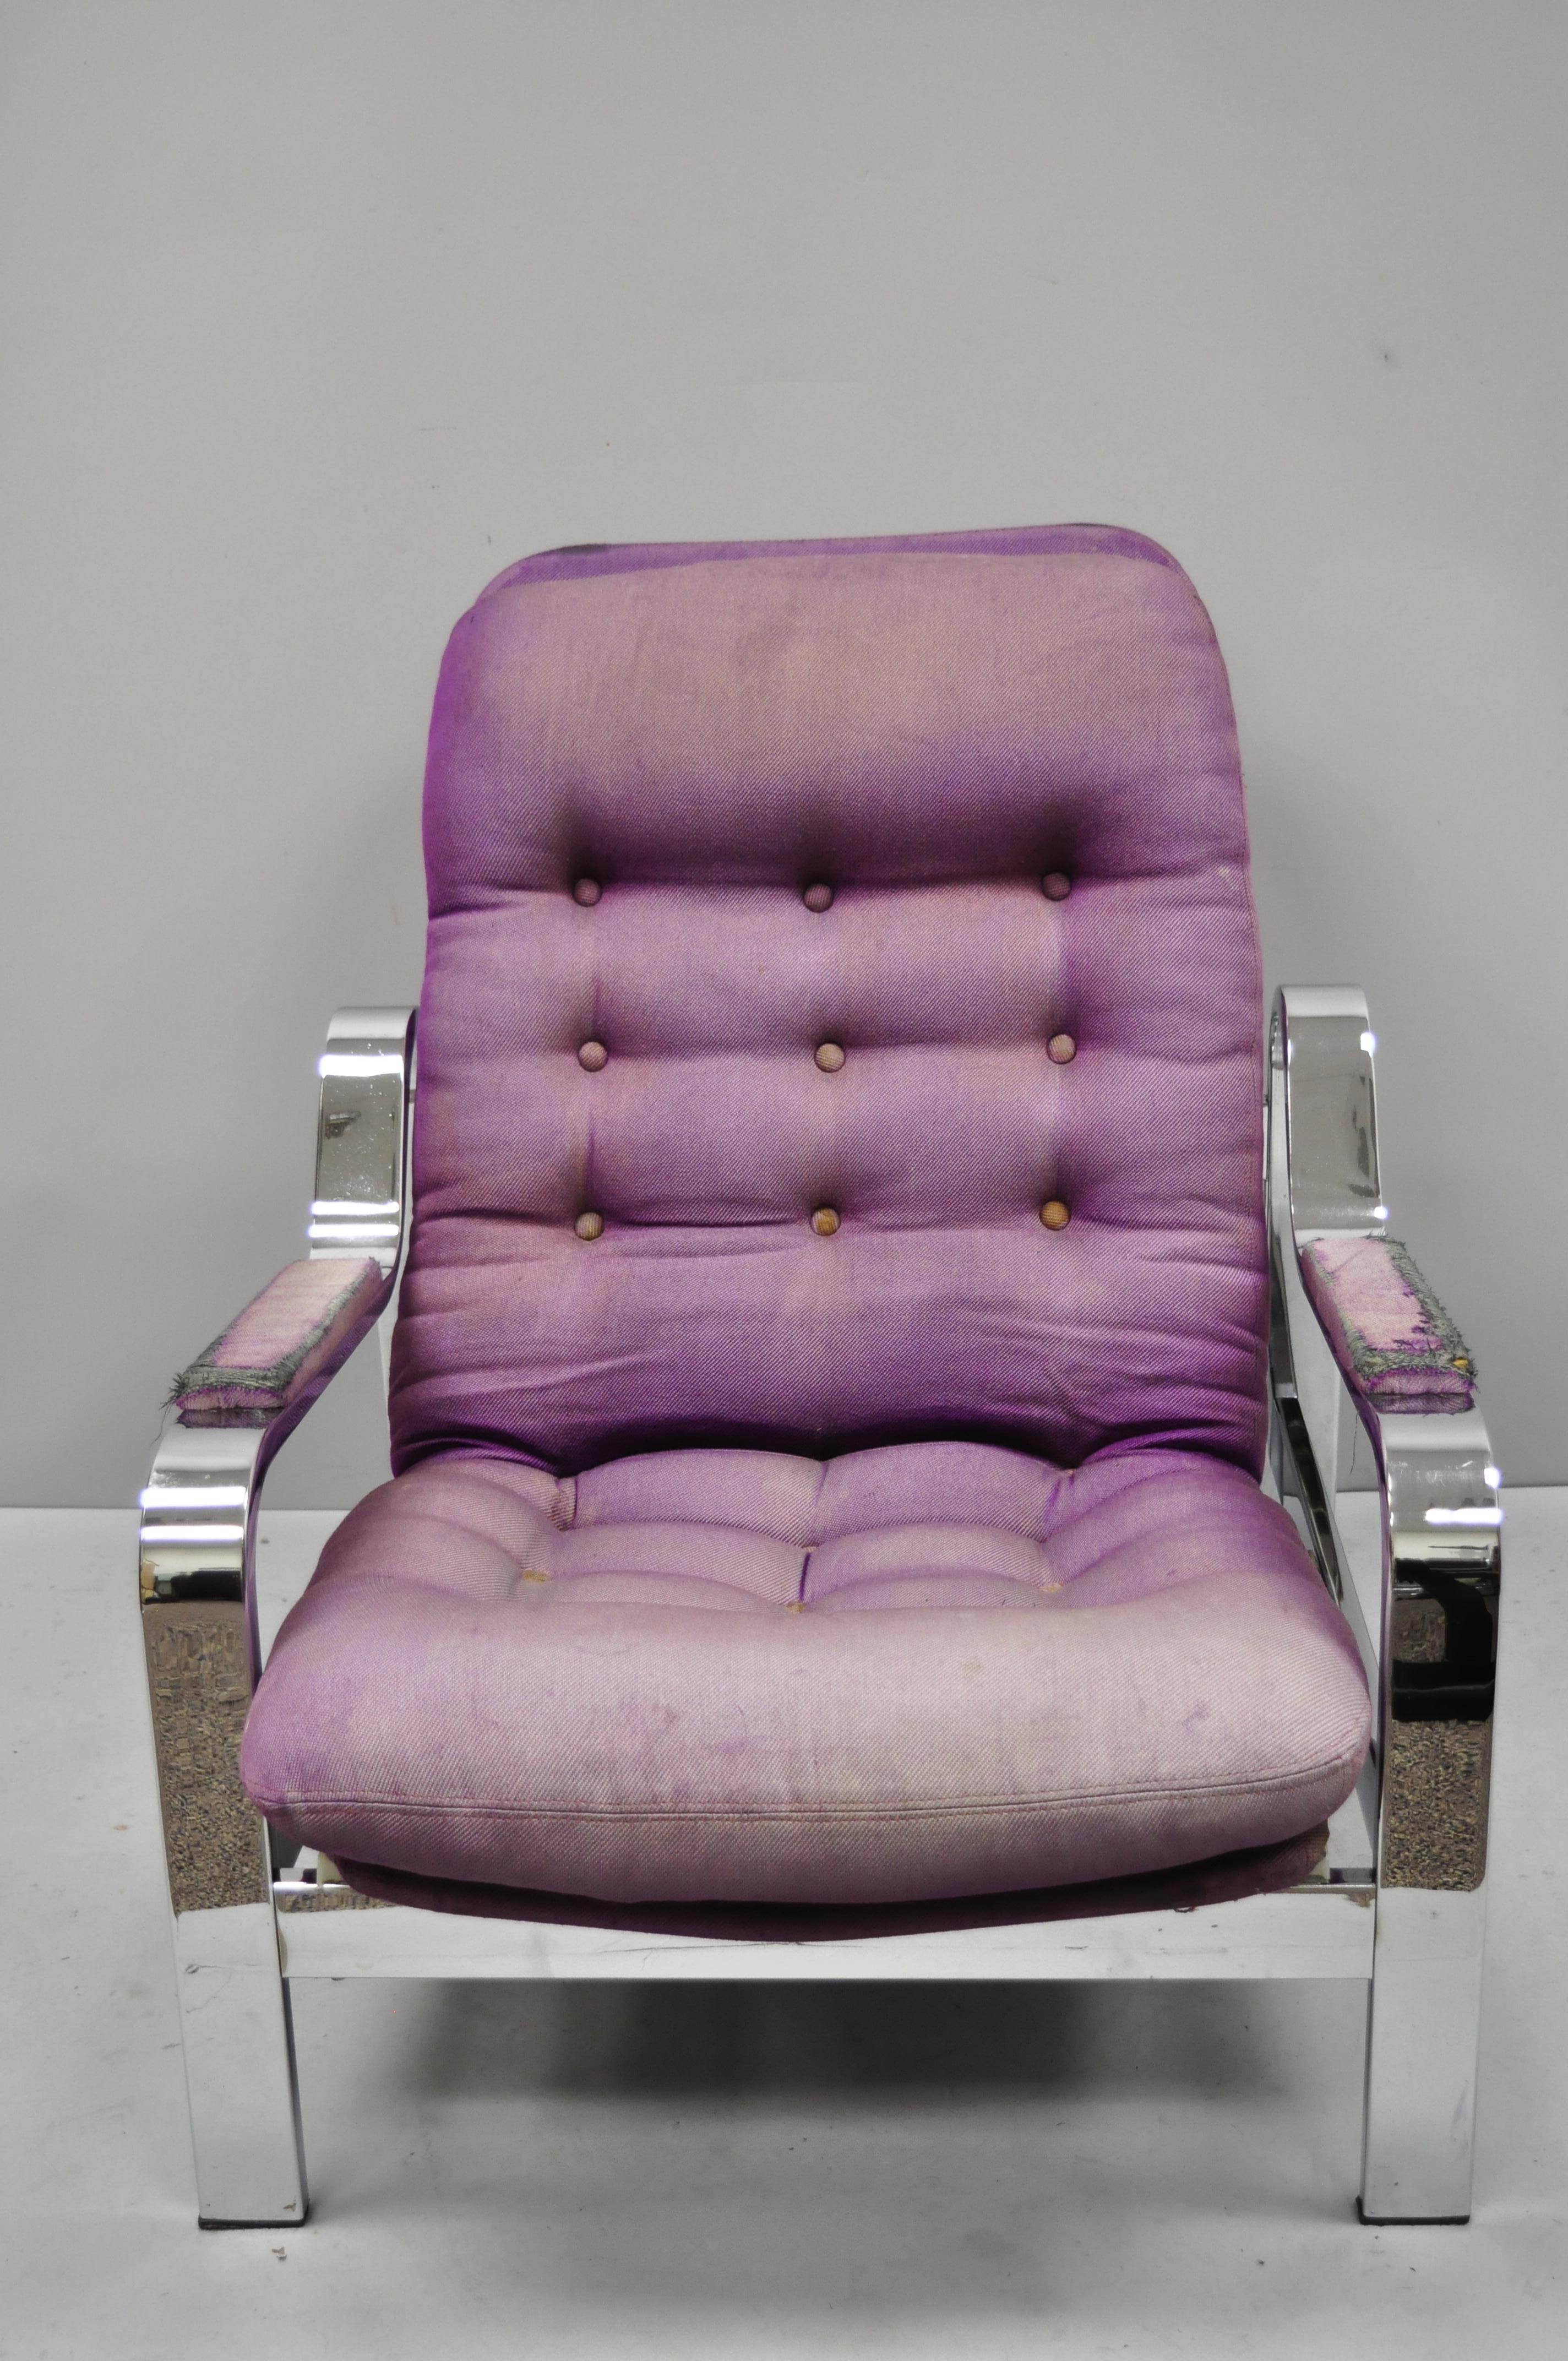 Vintage Mid-Century Modern Chrom Selig Recliner Lounge Chair nach Milo Baughman. Der Artikel zeichnet sich durch ein schlankes, verchromtes Gestell und gepolsterte Armlehnen aus. Sehr schöner Vintage-Artikel, toller Stil und Form A, ca. 1960er